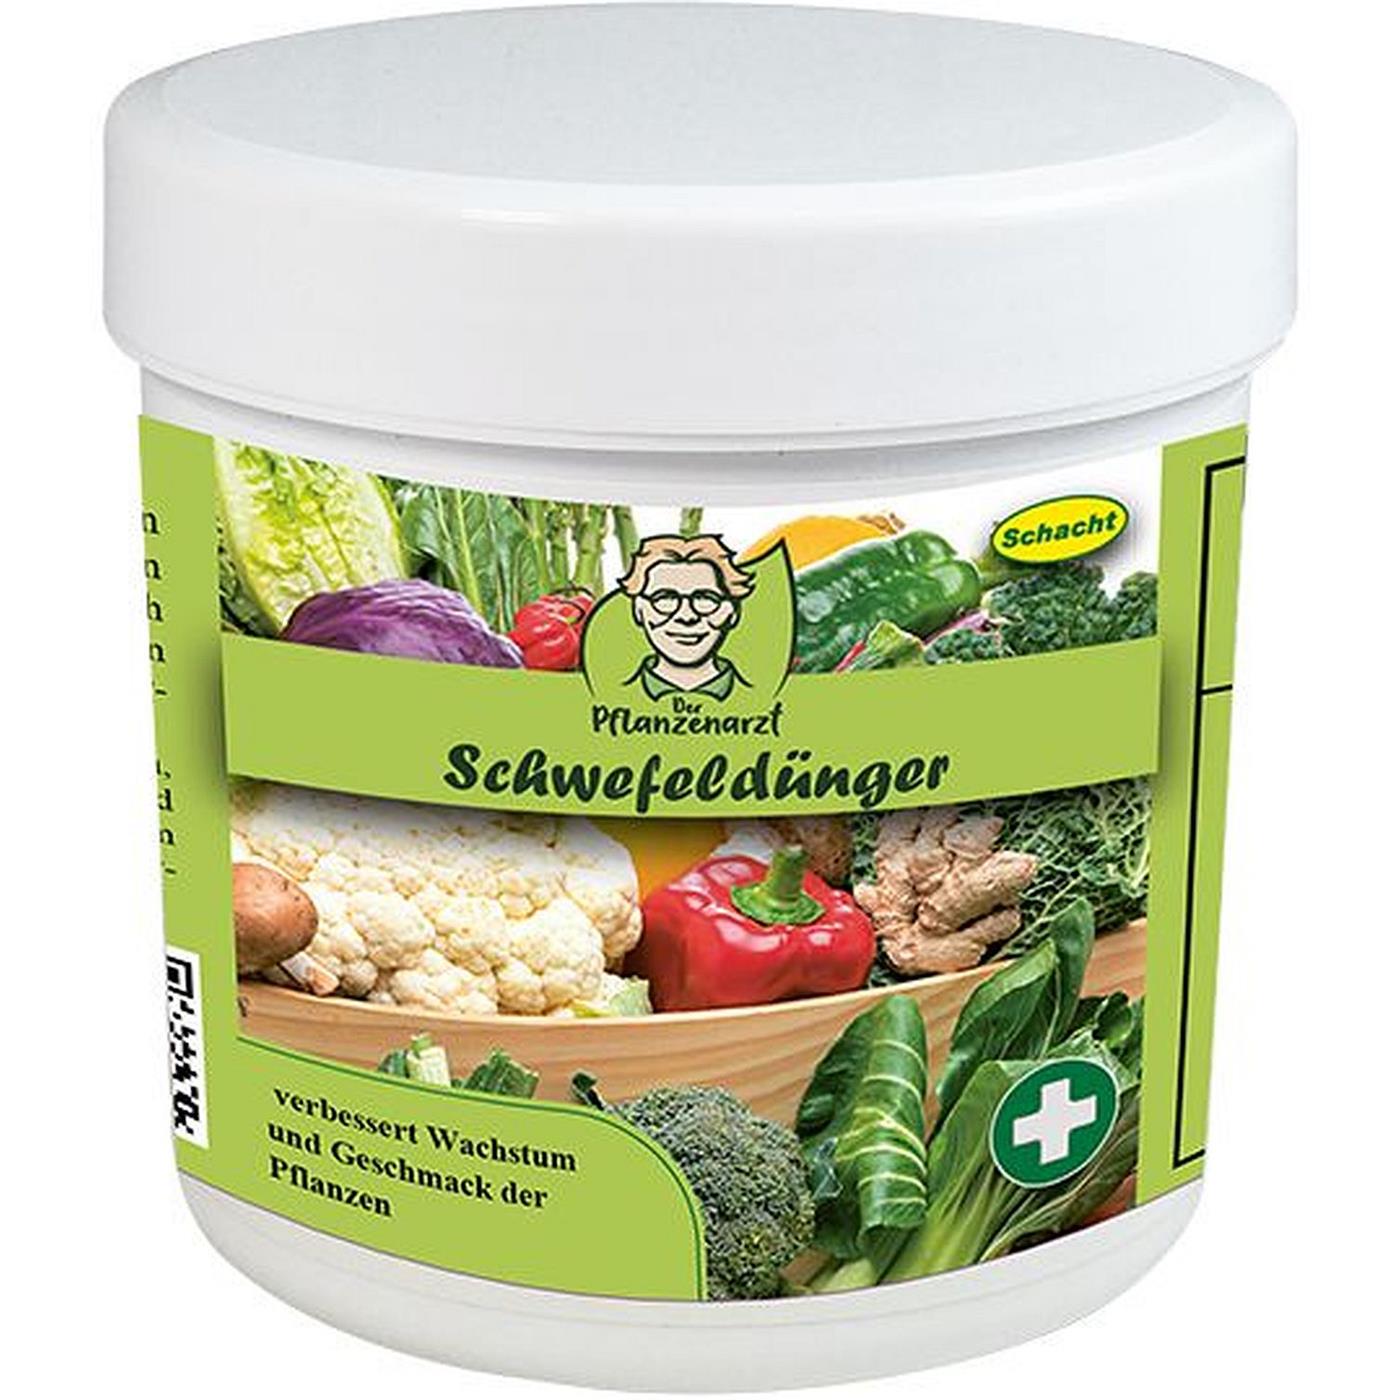 Schacht Pflanzenarzt Schwefeldünger verbessert Wachstum und Geschmack ...